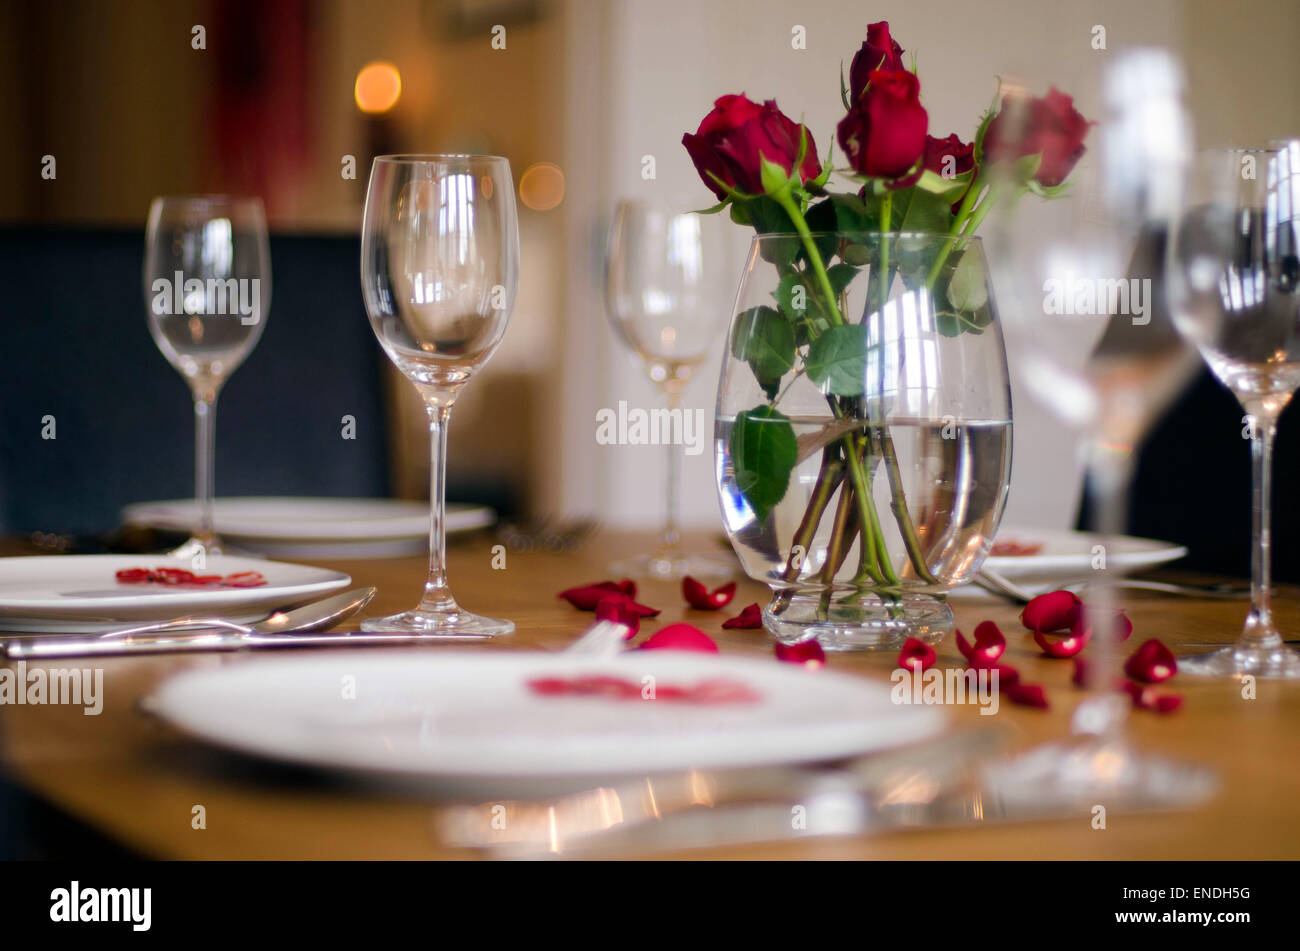 Un tavolo da pranzo insieme con le regolazioni del posto, bicchieri da vino & rose rosse in un vaso per un pasto di festa Foto Stock